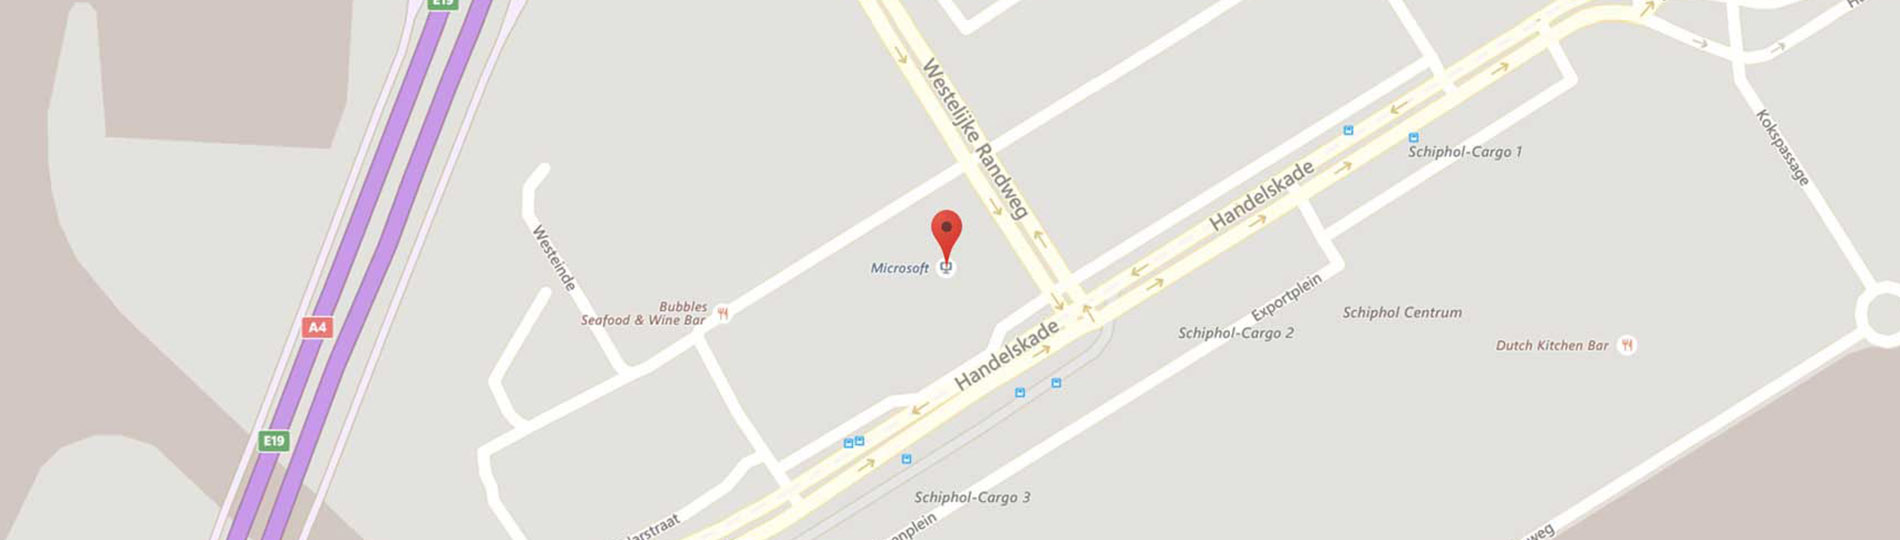 Een Bingkaart met een geopin op de plek waar het Microsoft Hoofdkantoor in Nederland zich bevindt